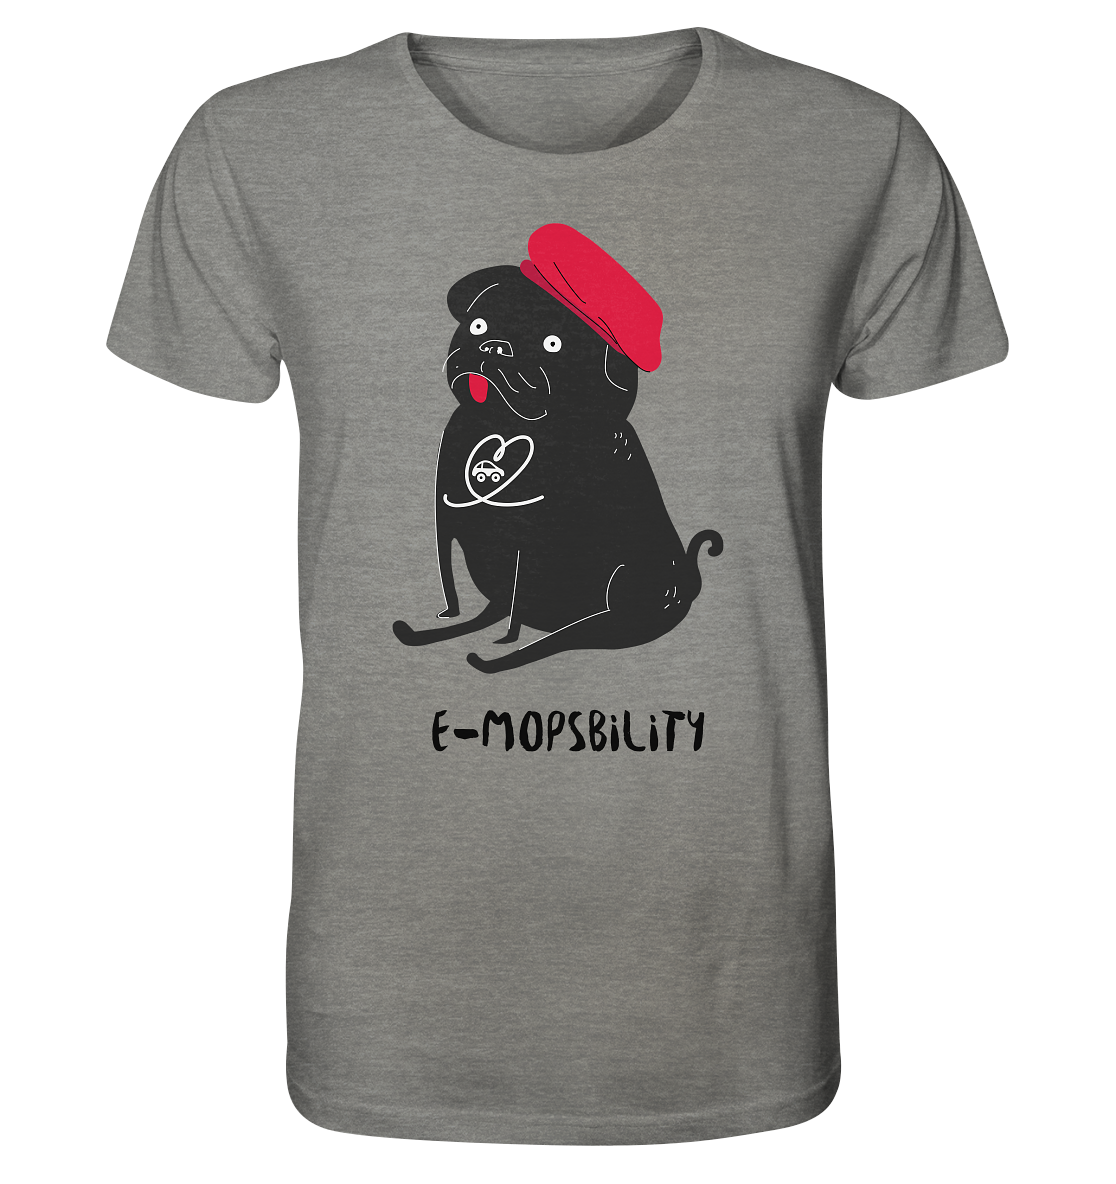 E-Mopsbility ORGANIC - Organic Shirt (meliert)